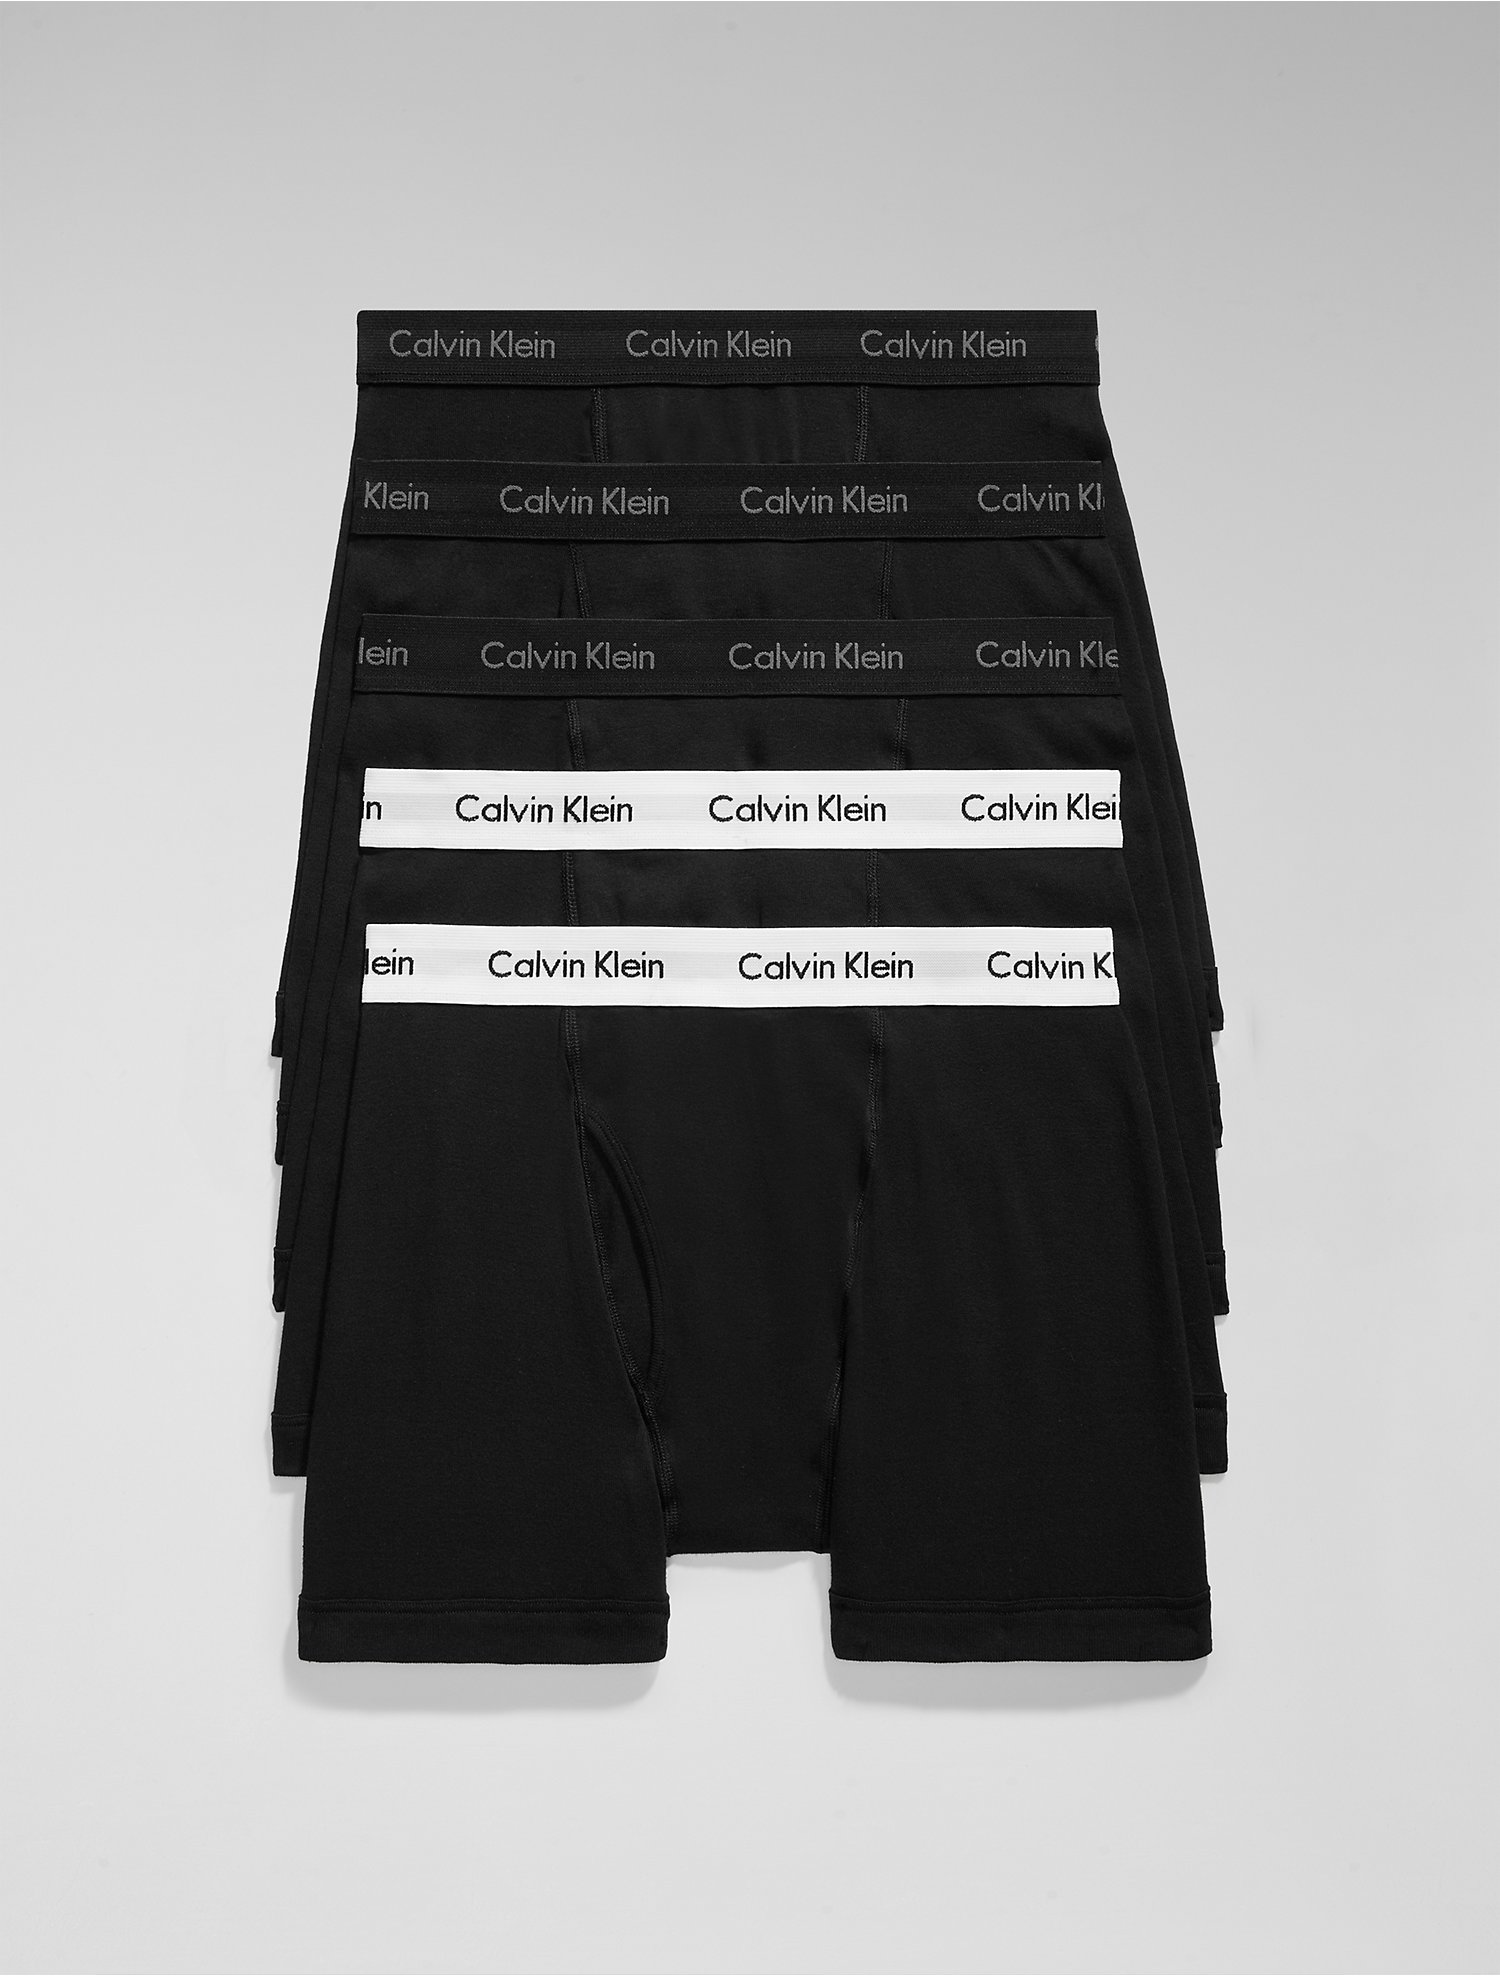 Introducir 82+ imagen calvin klein pack of underwear